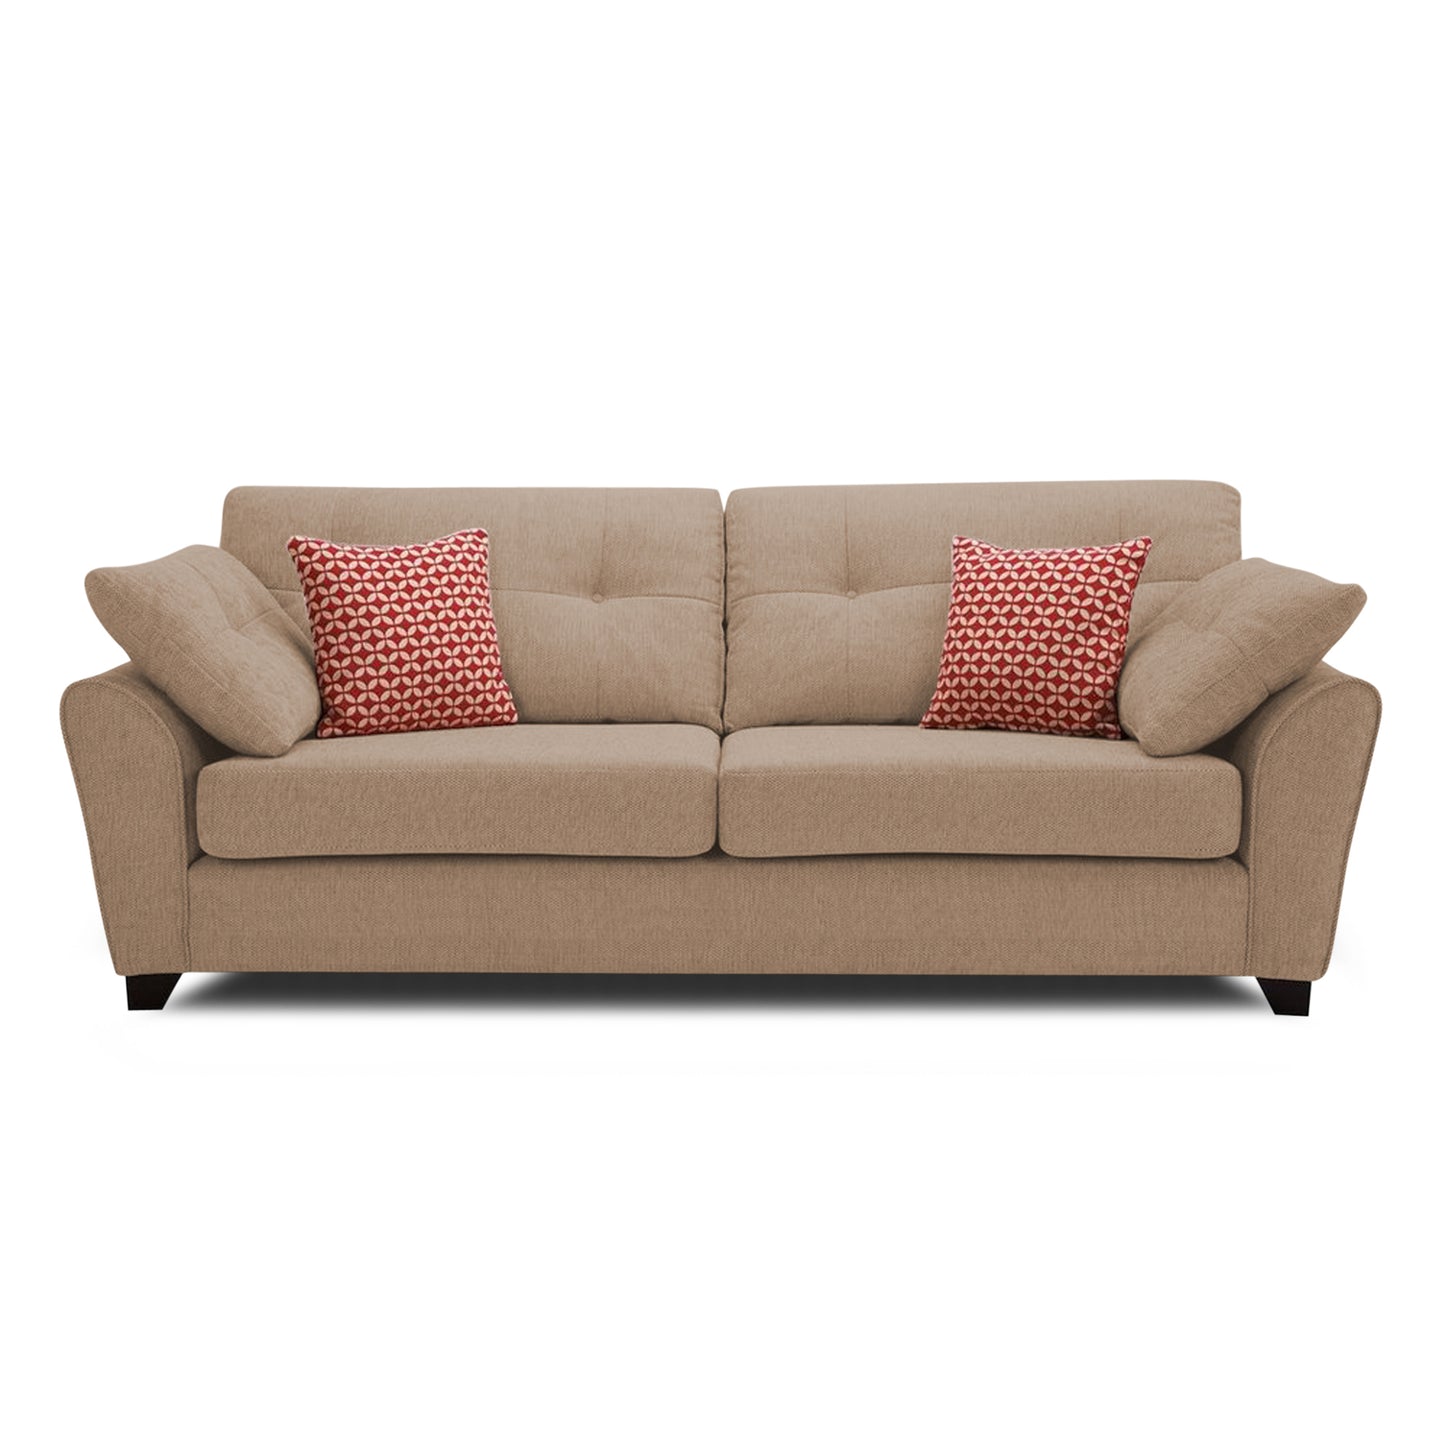 Adorn India Moris 3 Seater Fabric Sofa (Beige)